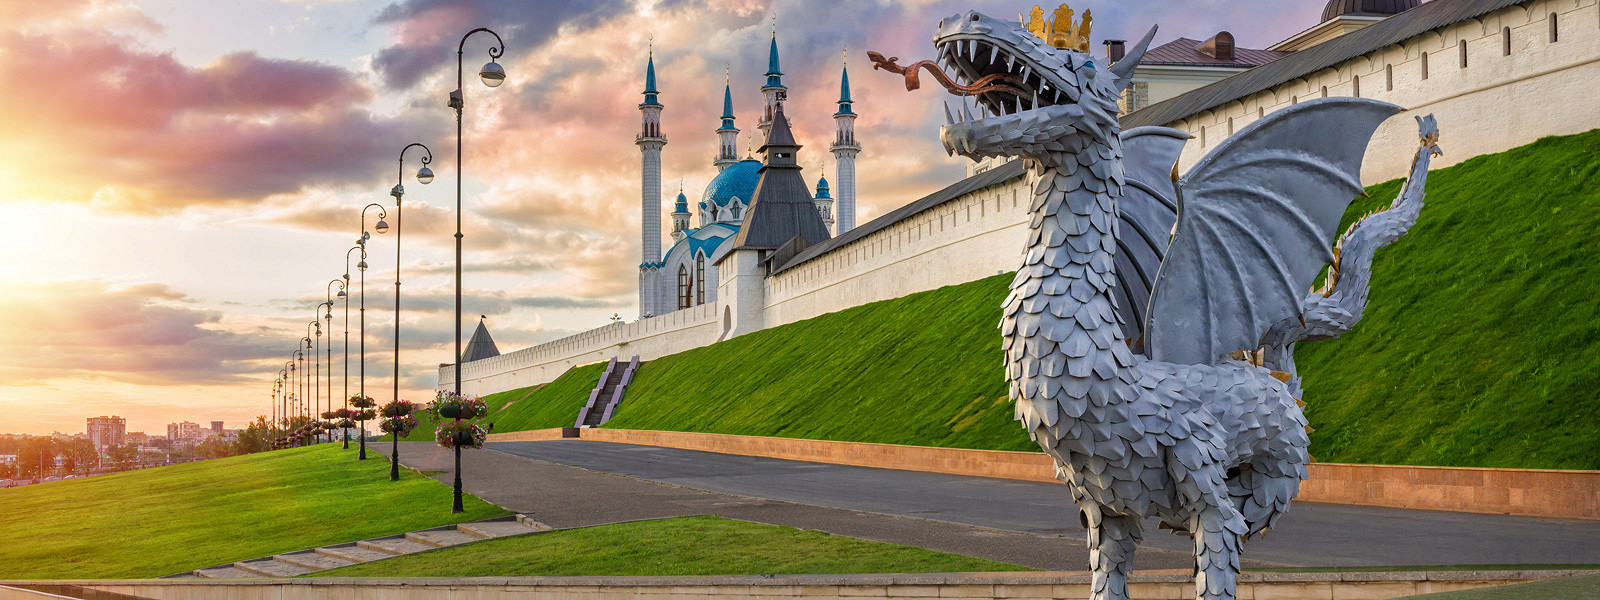 Журнал/Я переехала в Казань, и мне не нравится: 6 причин, по которым жить здесь не очень